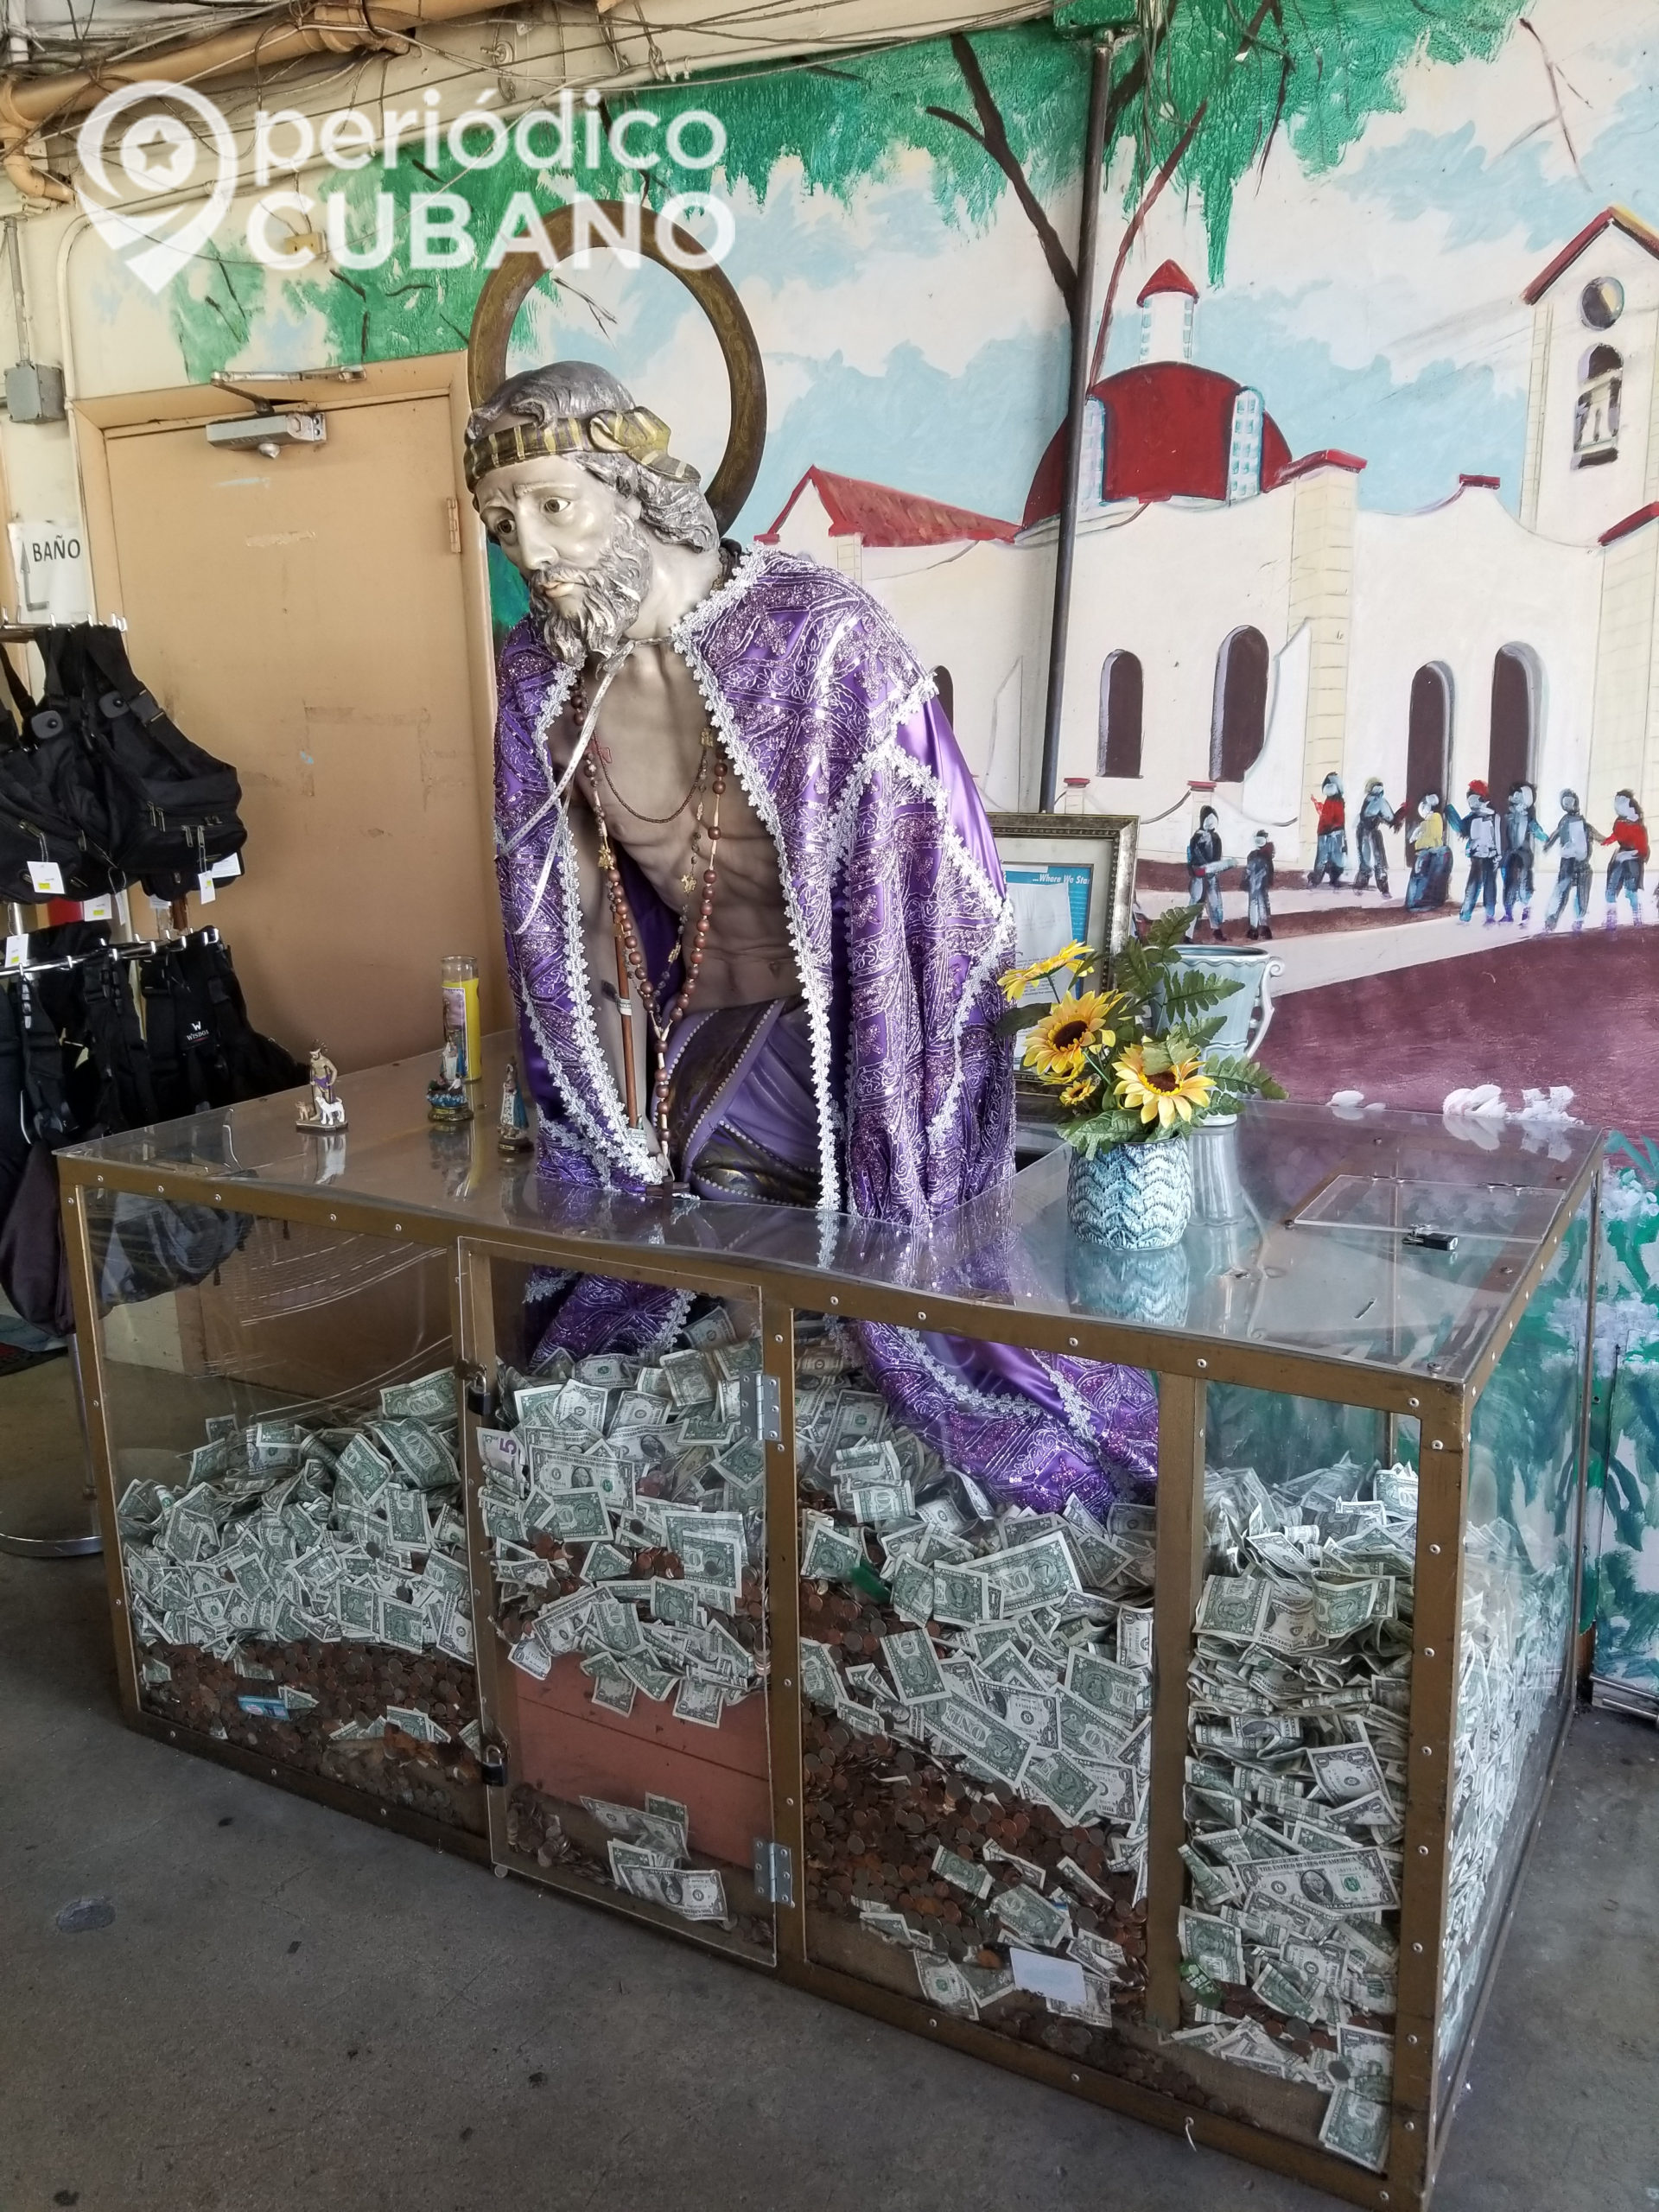 La inflación no cree en Santos cobran hasta 5 mil dólares en Cuba por rituales religiosos